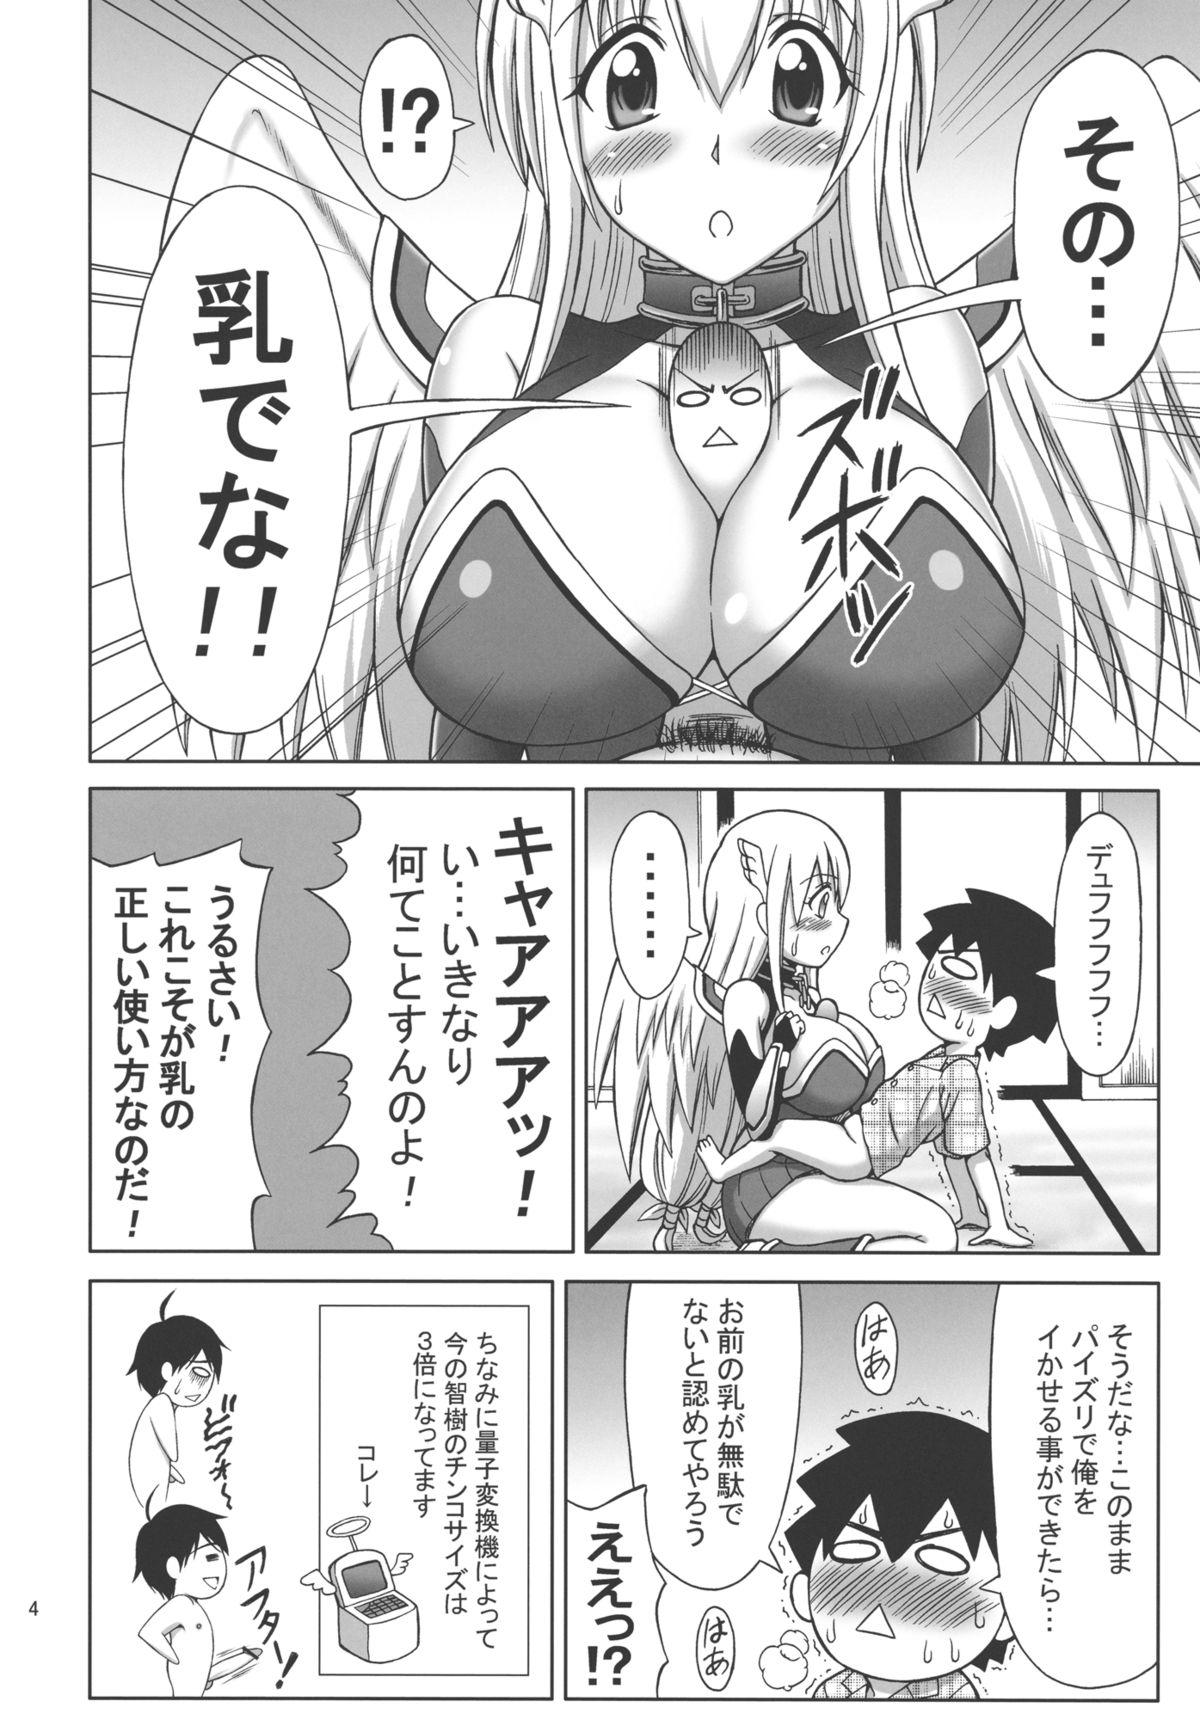 Climax Mikakunin Seibutsu OO - Sora no otoshimono Teen - Page 4